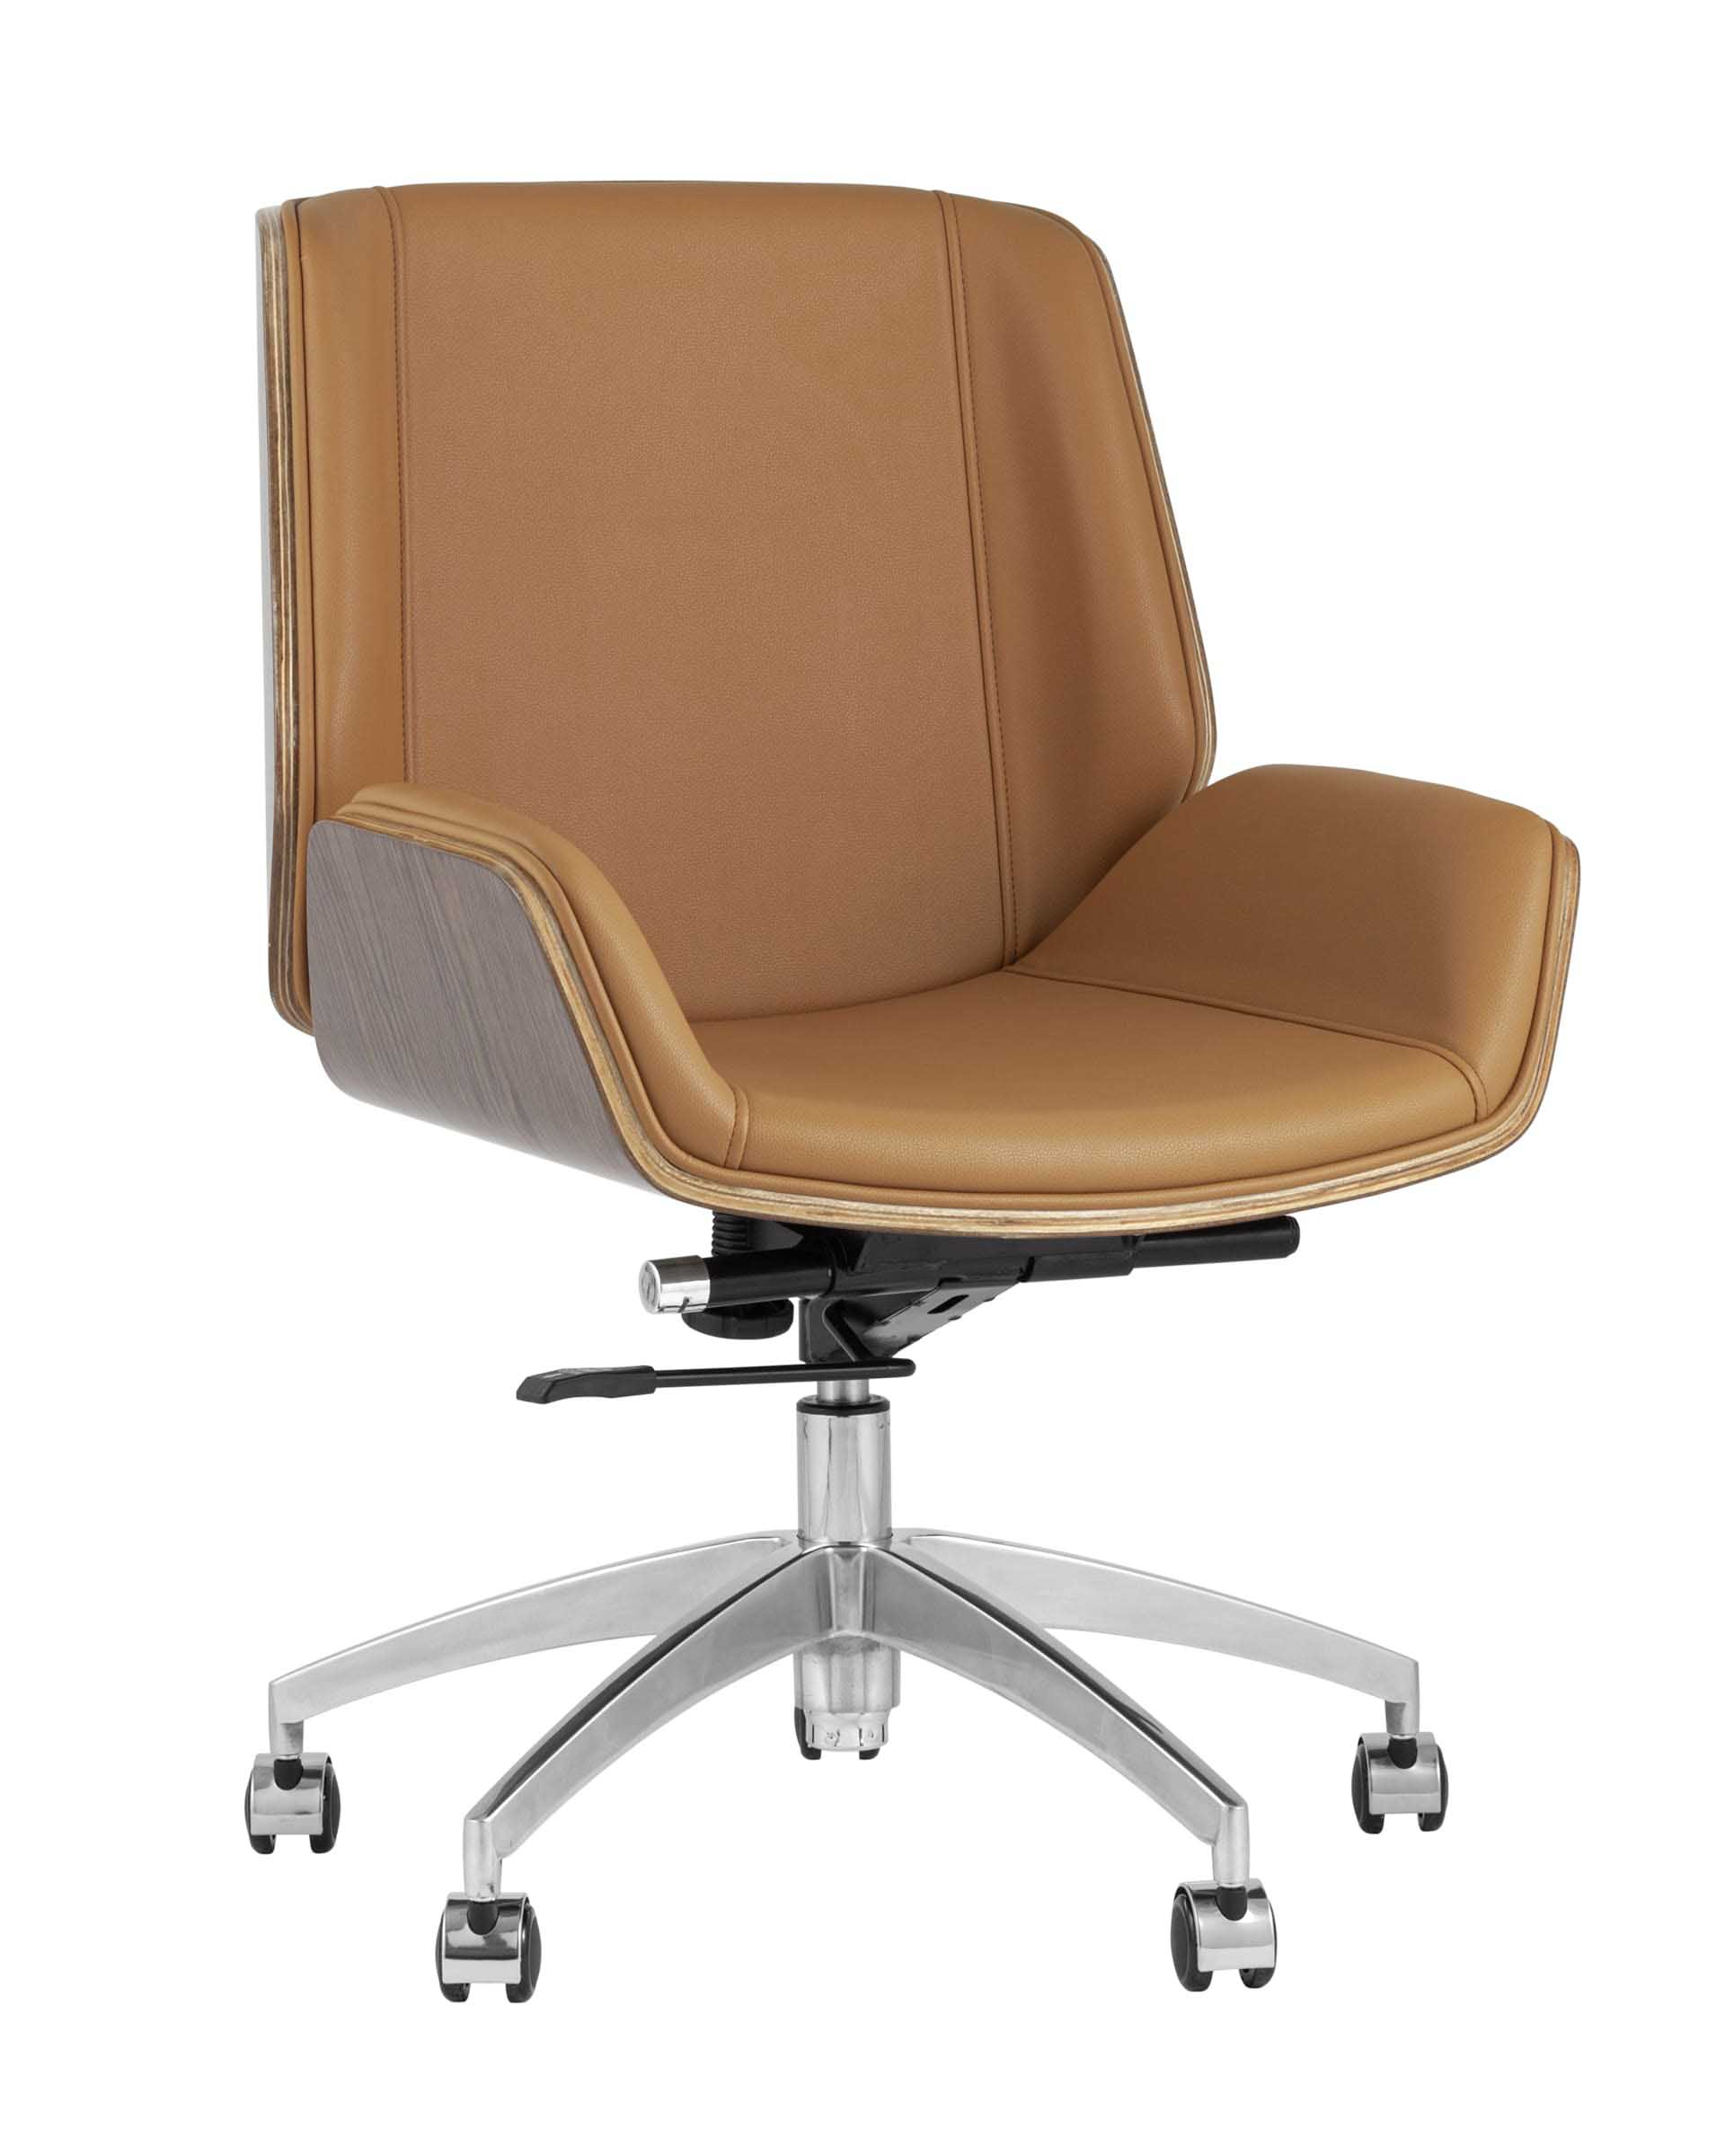 Компьютерное кресло TopChairs Crown офисное коричневое, обивка экокожа, металлический каркас, механизм качания Мульт